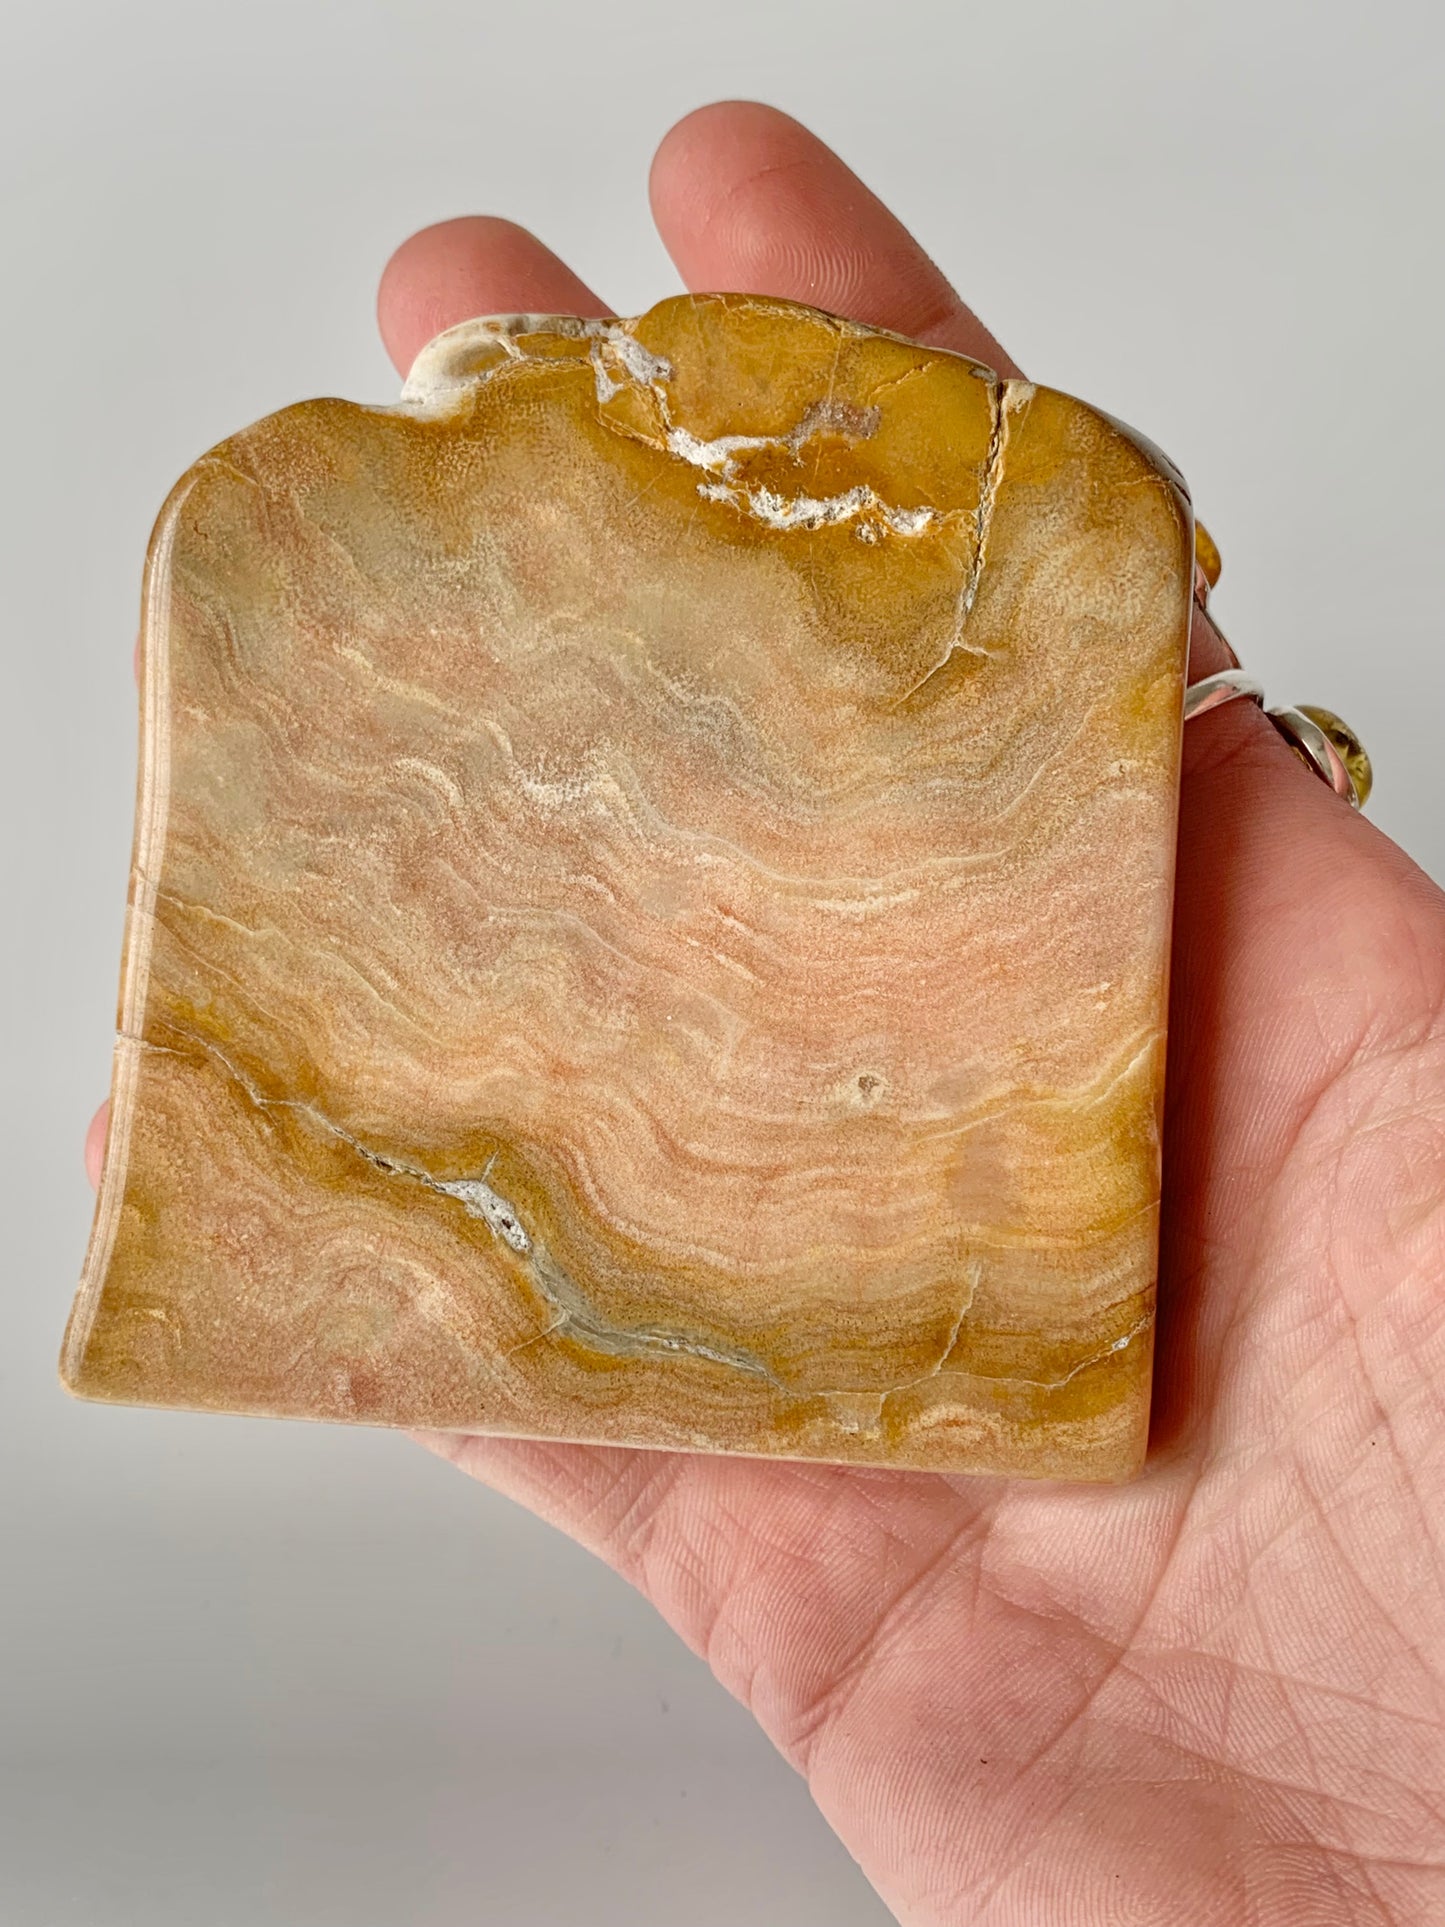 Stromatoporoids Fossil Slab